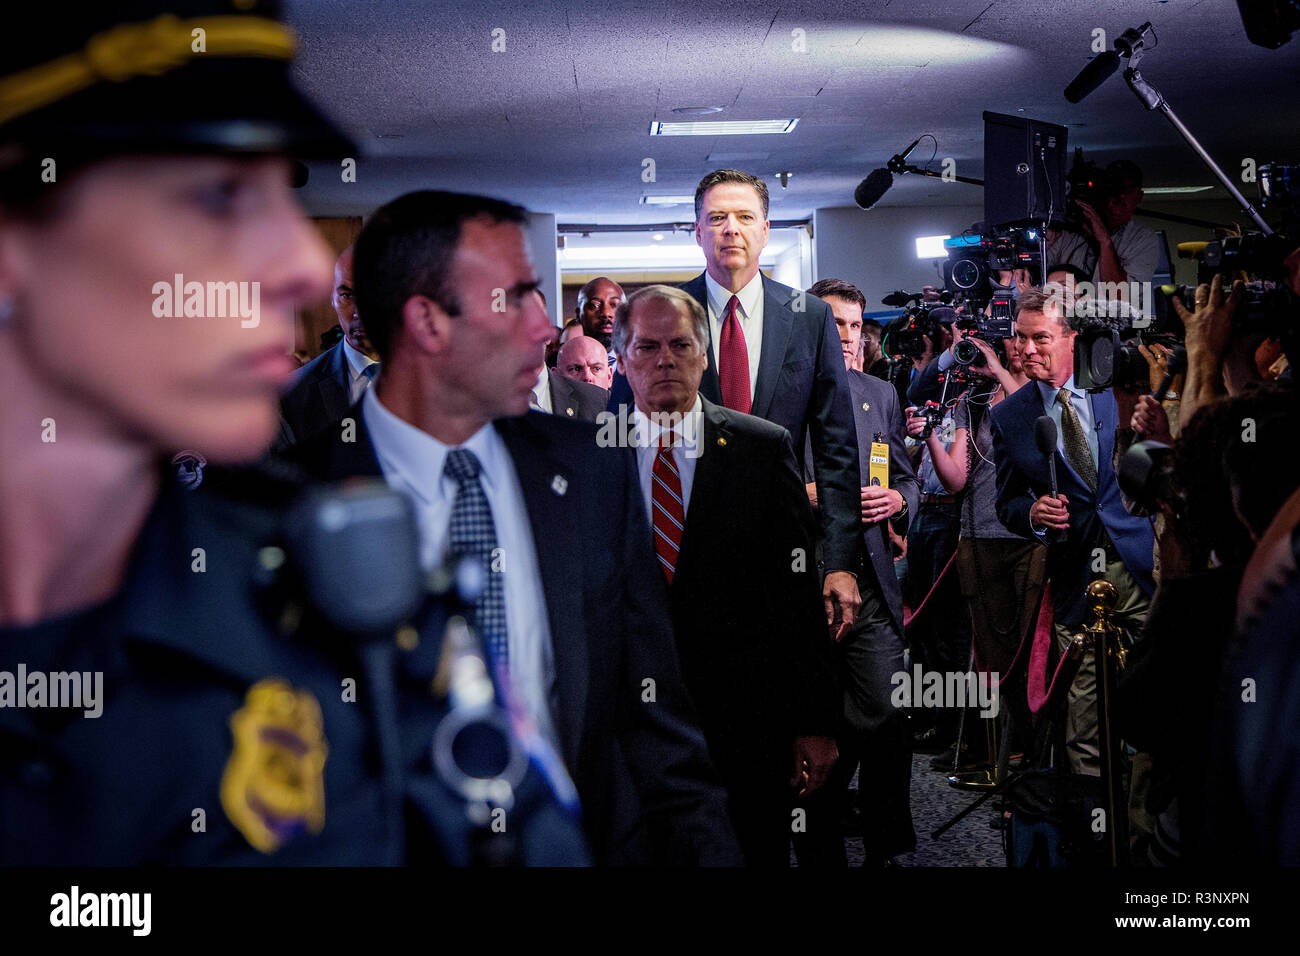 El ex director del FBI, James Comey testifica delante del Comité de Inteligencia del Senado de EE.UU. como parte de la investigación Comités qué participación Ruissia tenía en la elección de Donald Trump como el Presidente de los Estados Unidos. Foto de stock